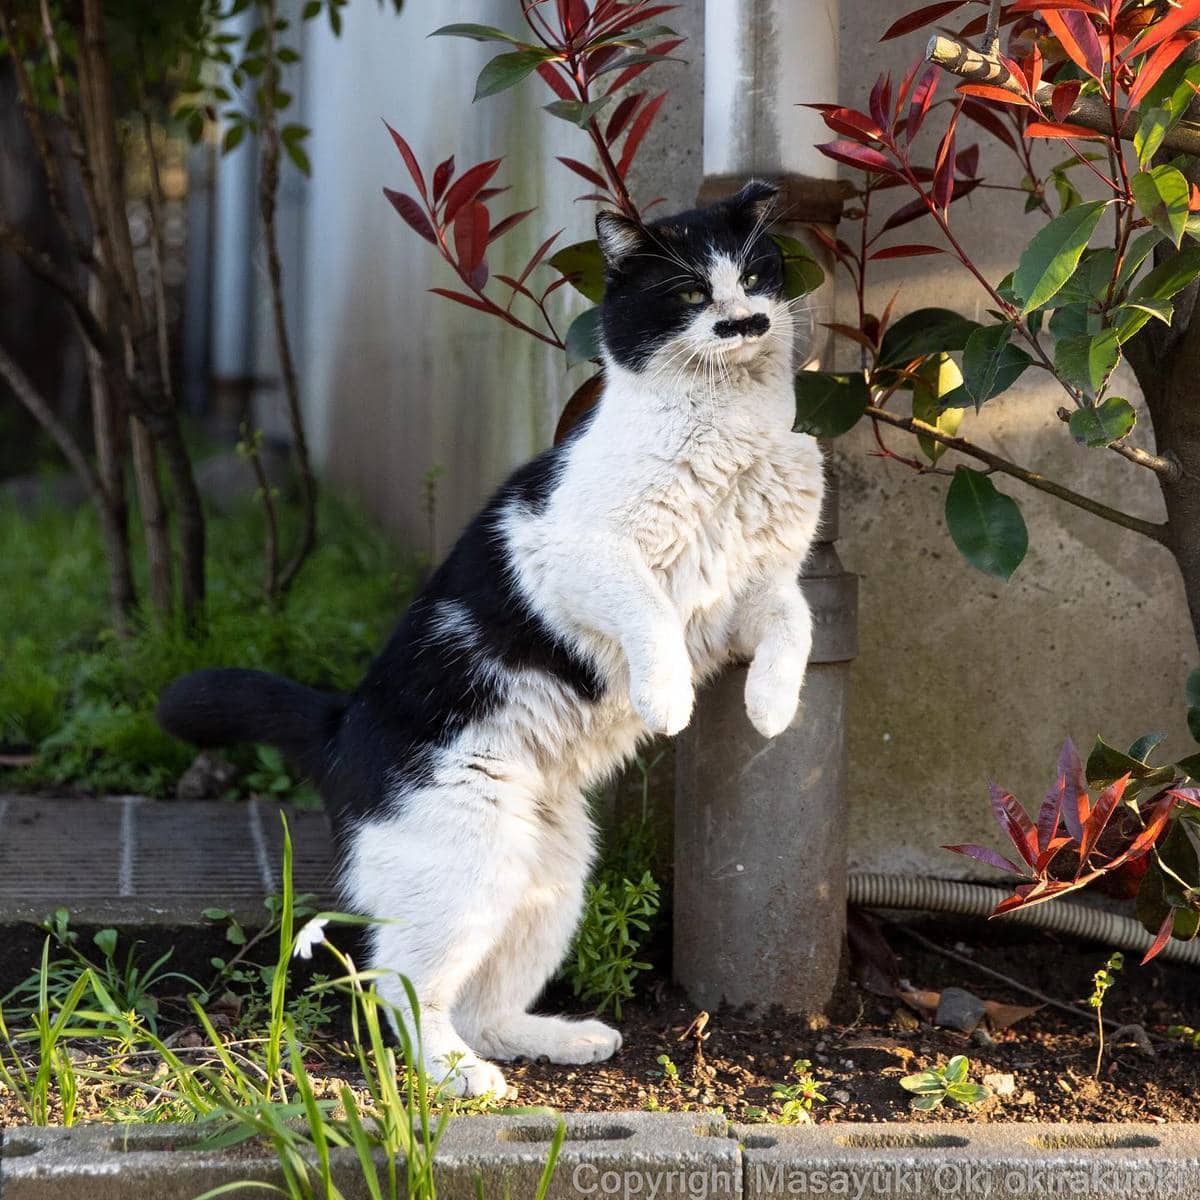 20 снимков уличных котов от японского фотографа, который как никто умеет запечатлевать харизму этих бродяг 70